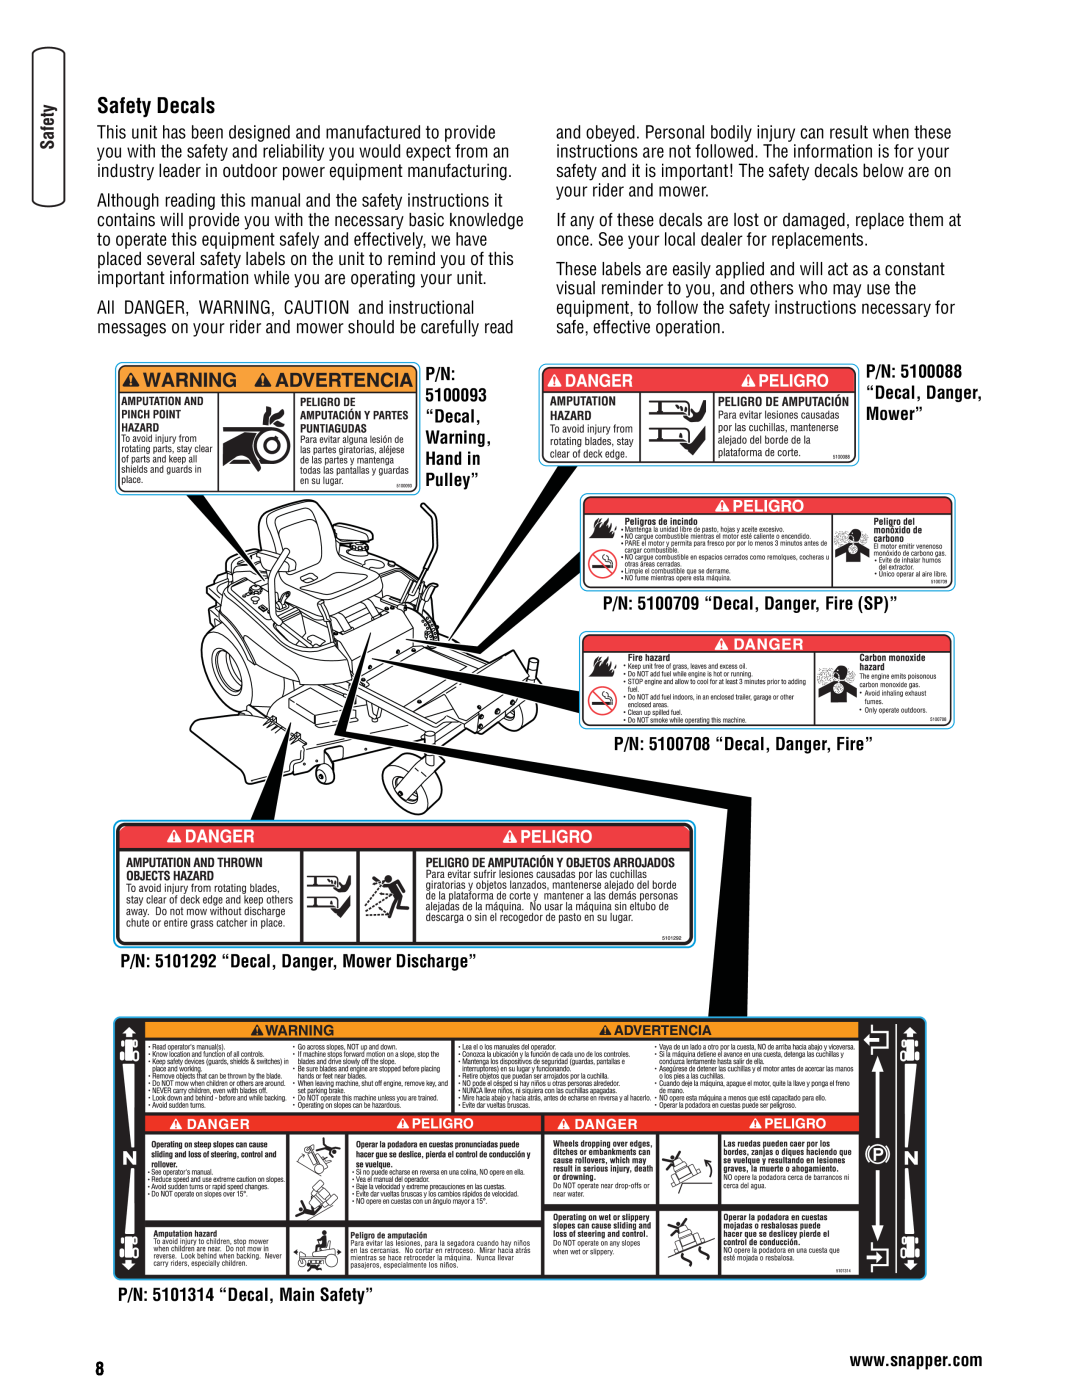 Snapper 355Z manual P/N 5100093 “Decal, P/N “Decal, Danger Mower”, P/N 5100709 “Decal, Danger, Fire SP” 